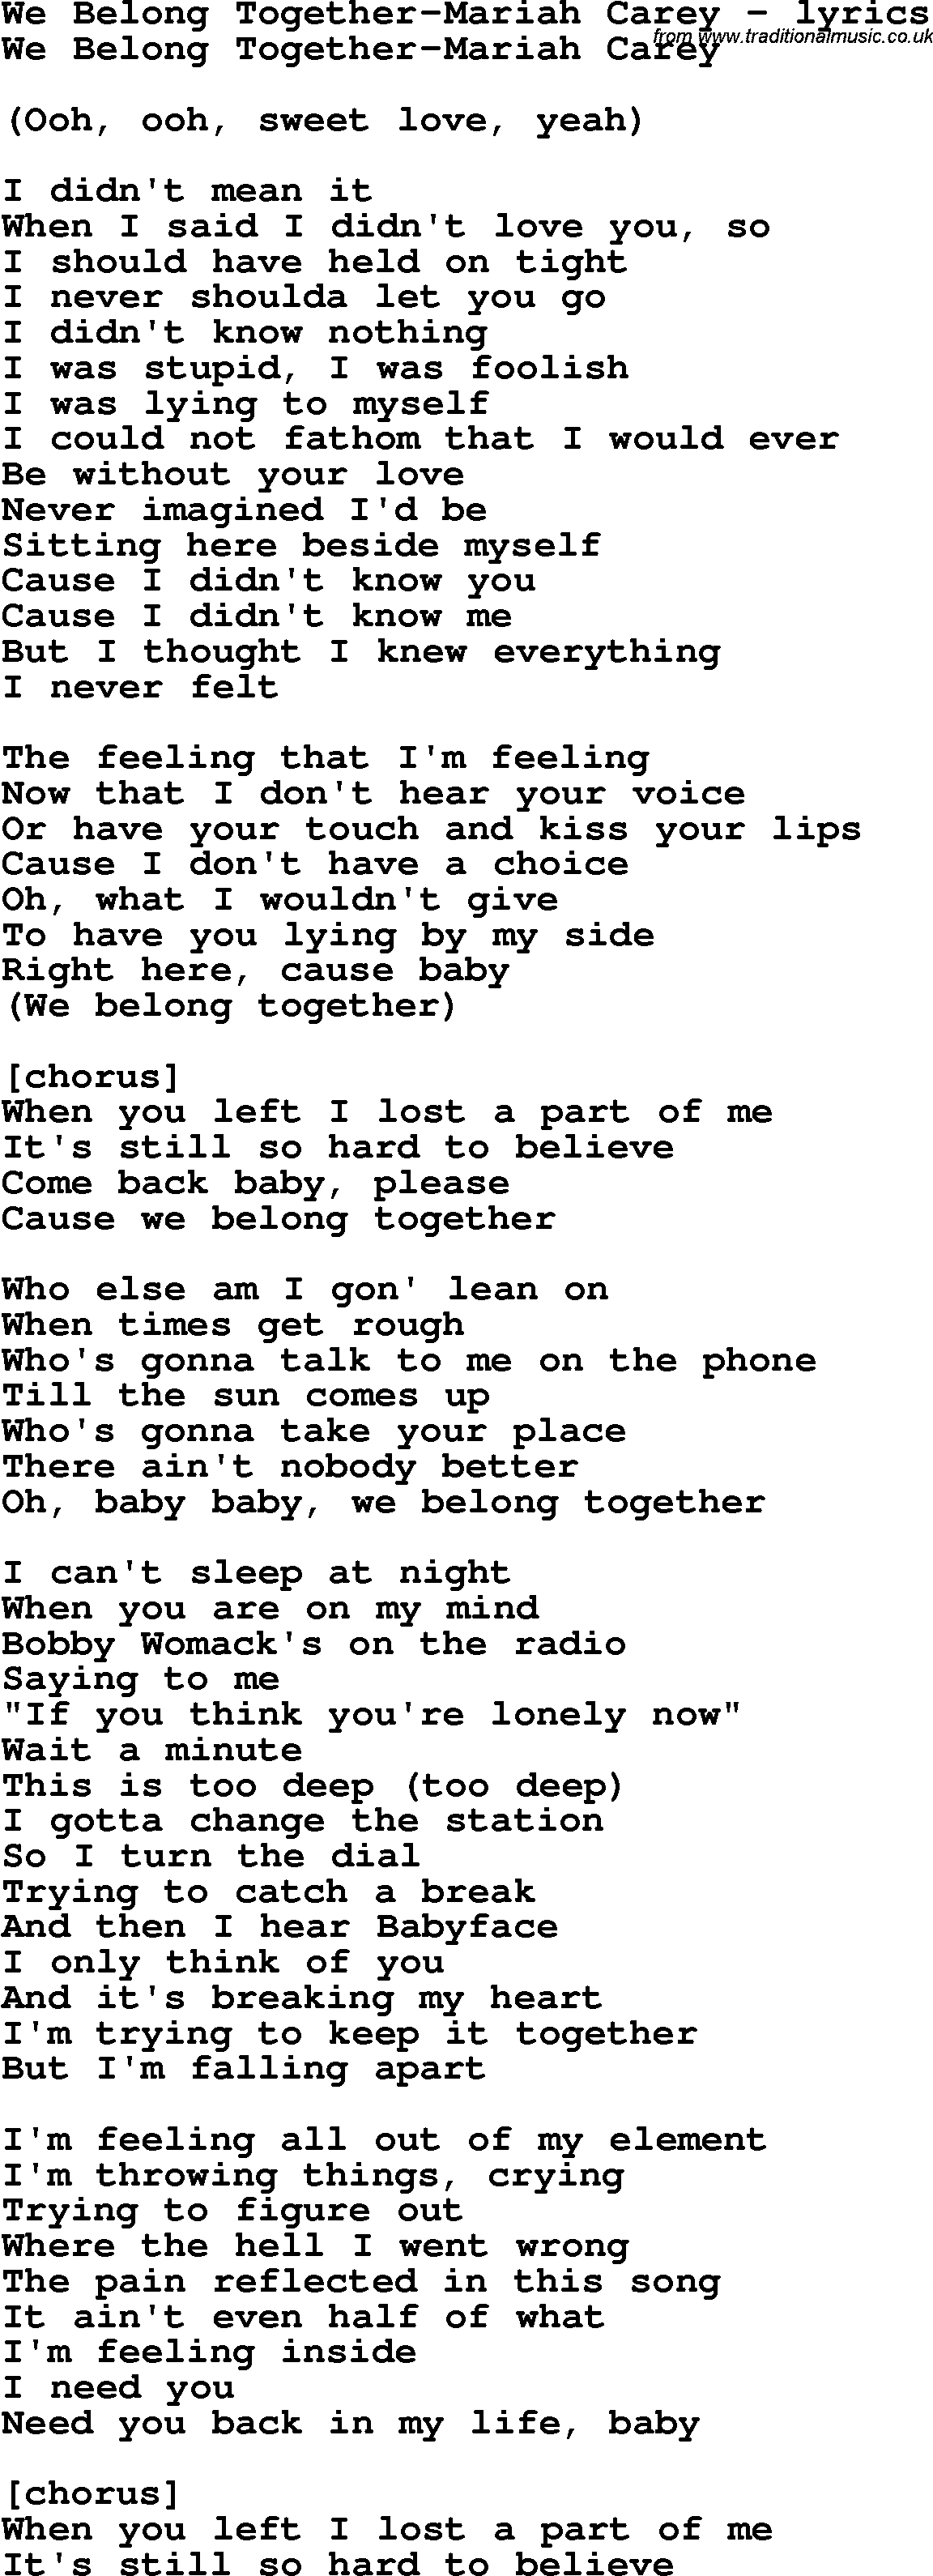 Love Song Lyrics for: We Belong Together-Mariah Carey